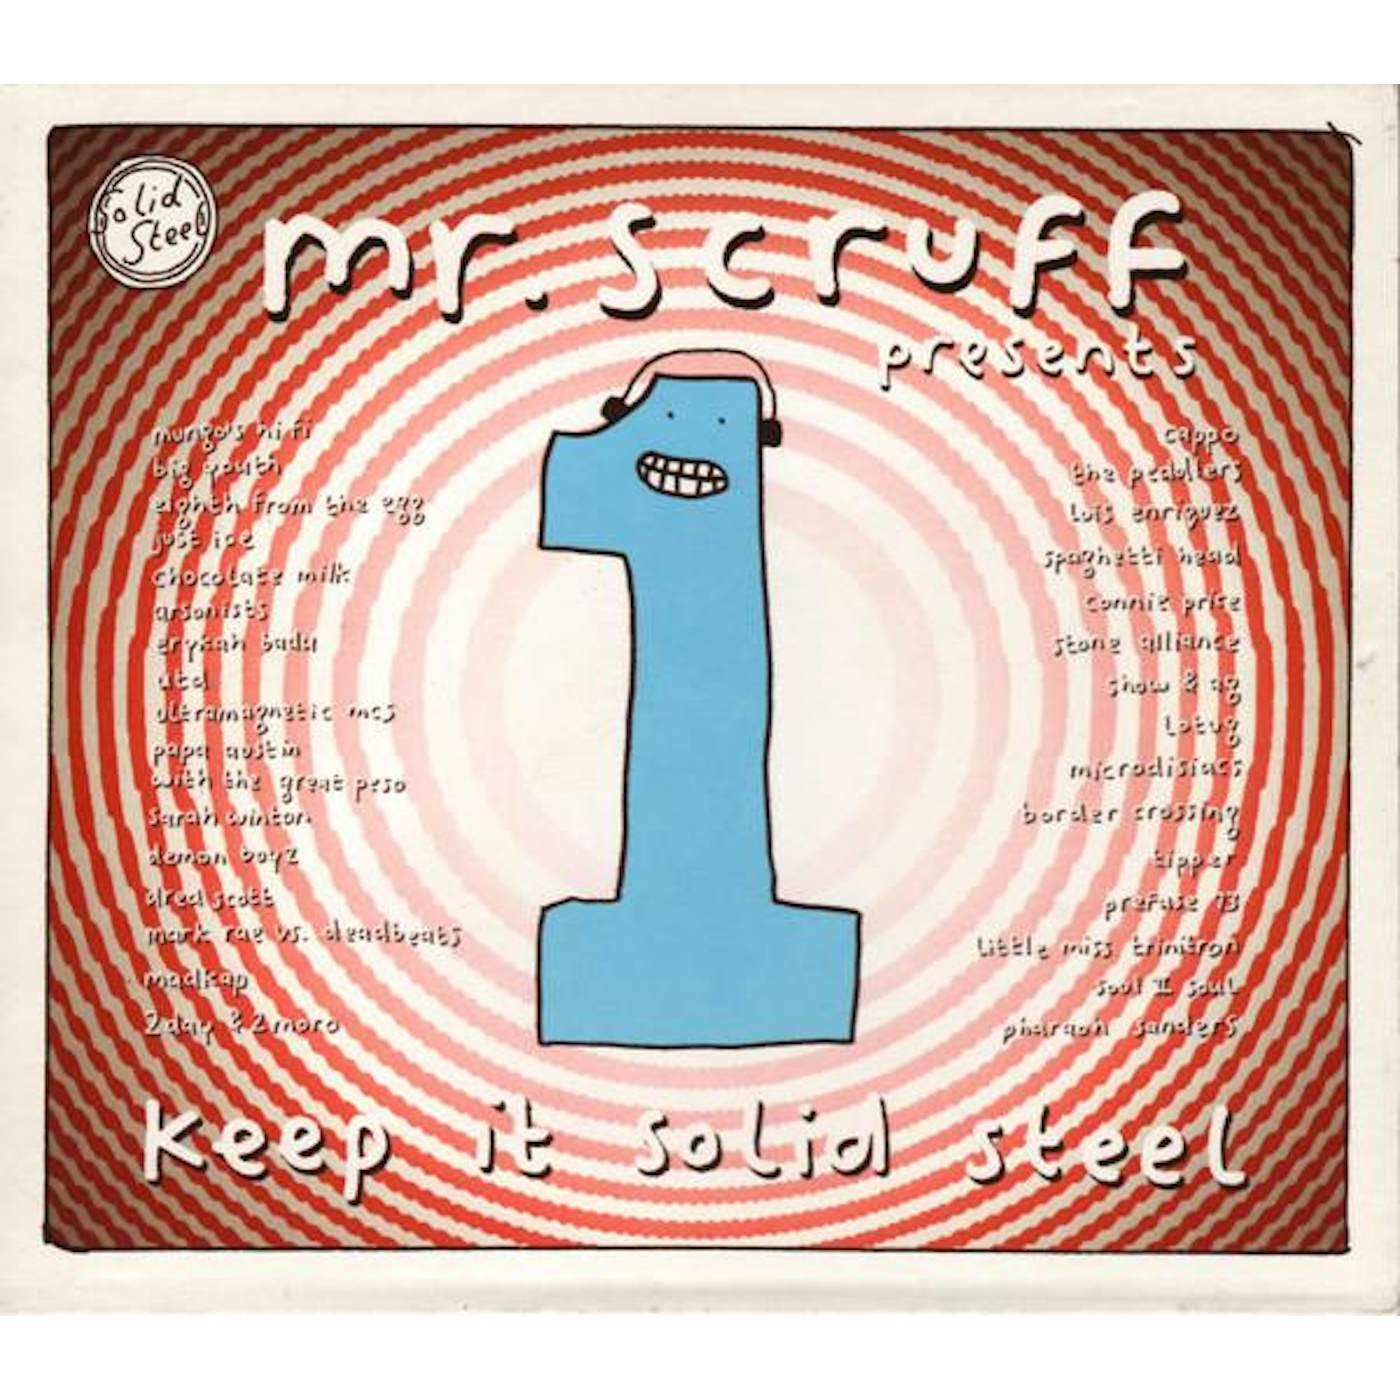 Mr. Scruff KEEP IT SOLID STEEL 1 CD